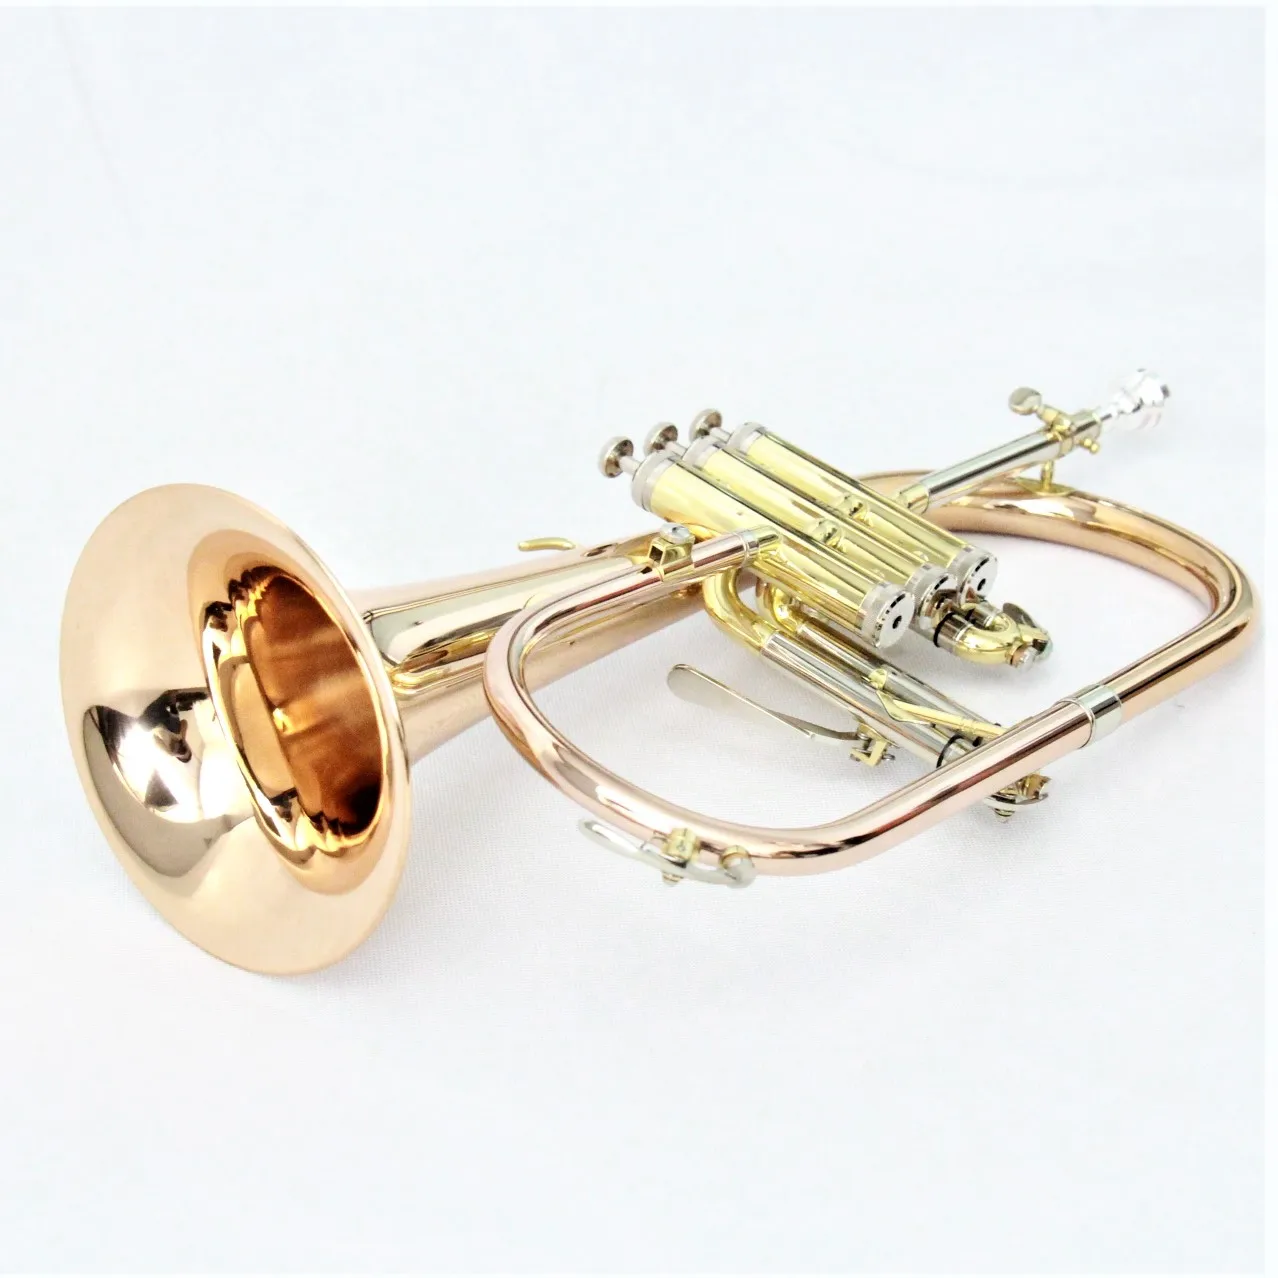 Top grade brass instruments rose gold flugelhorn good price brass flugel horn